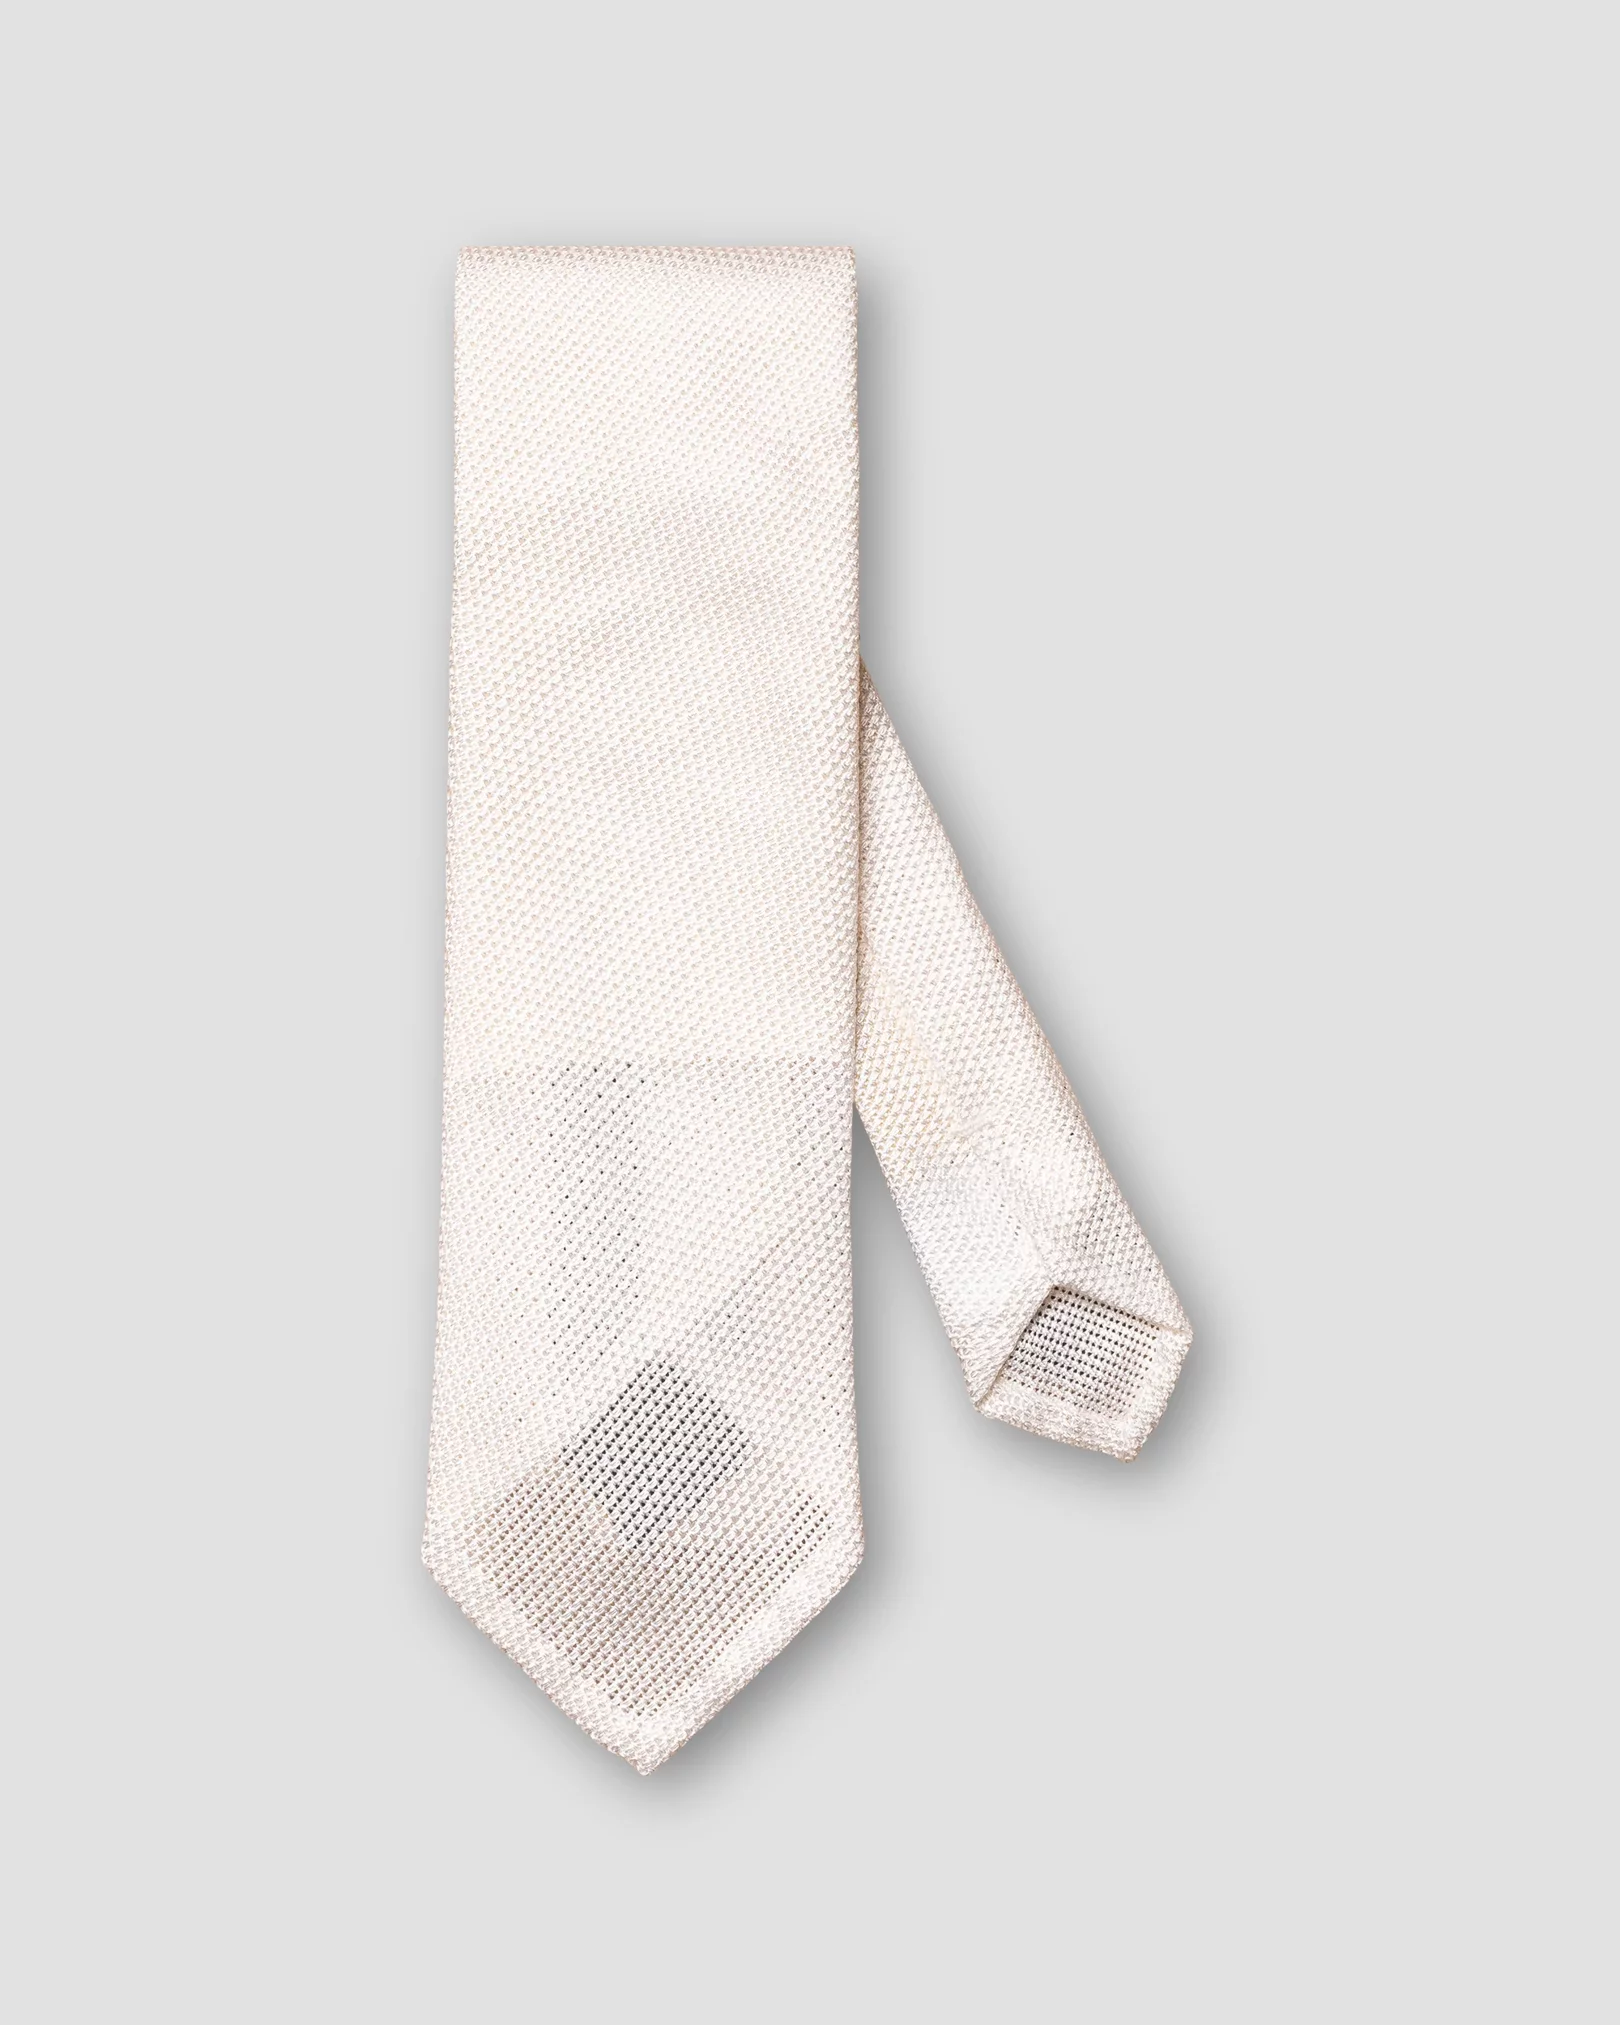 Cravate blanche en grenadine fine confectionnée à la main